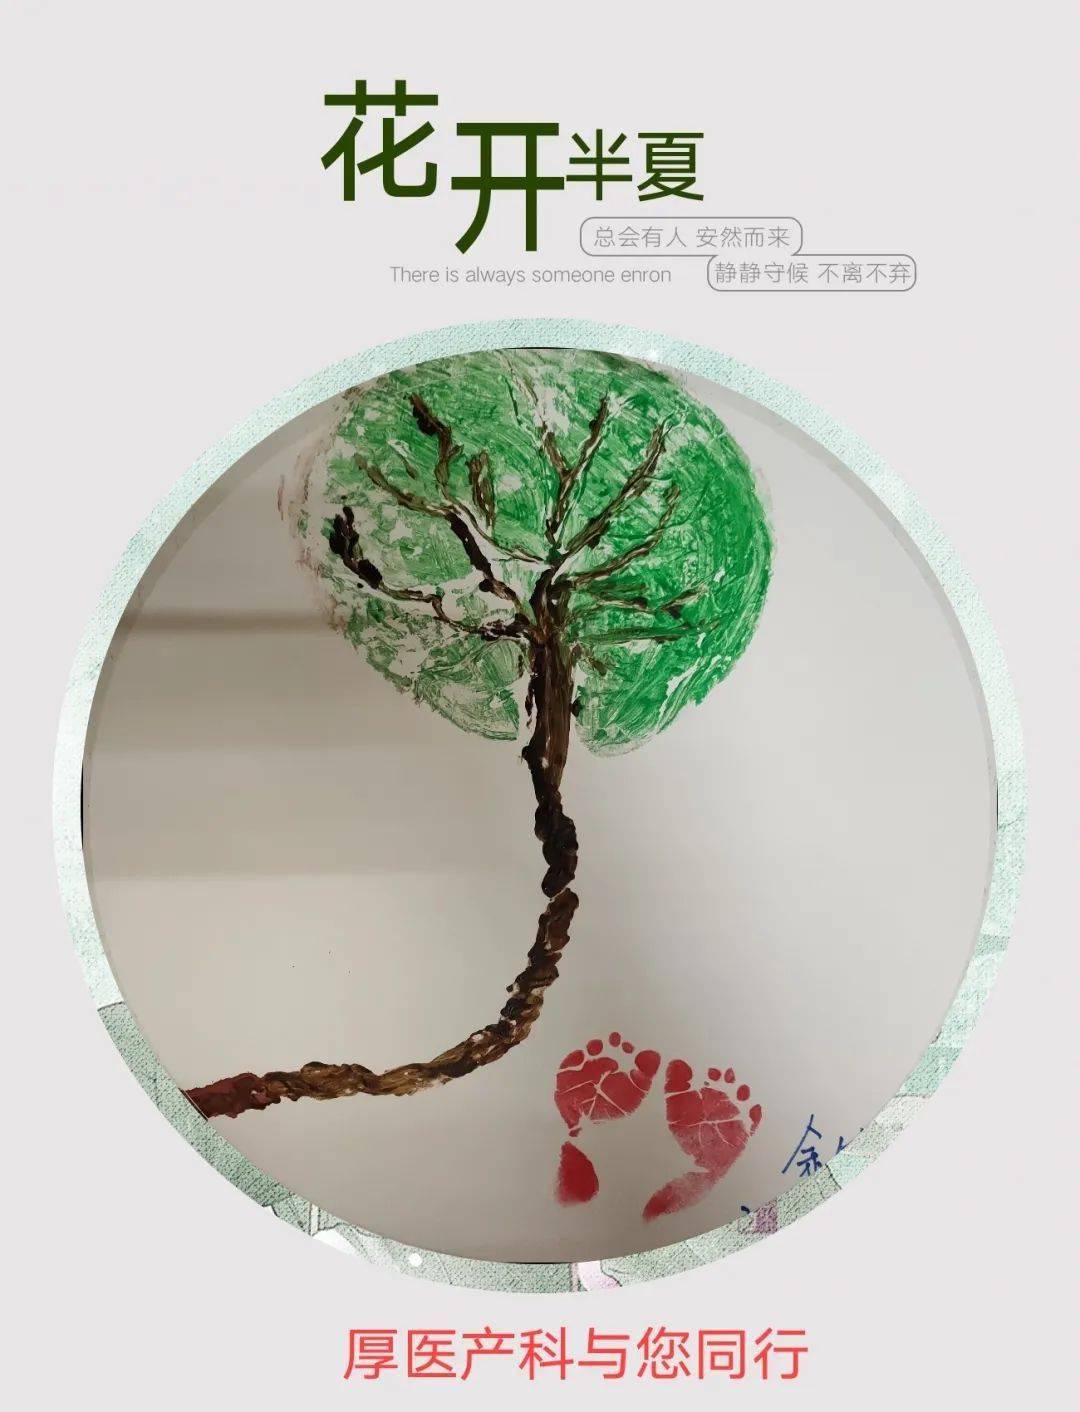 据介绍,胎盘拓印生命树是厚街医院妇产科今年新推出的活动,用胎盘在